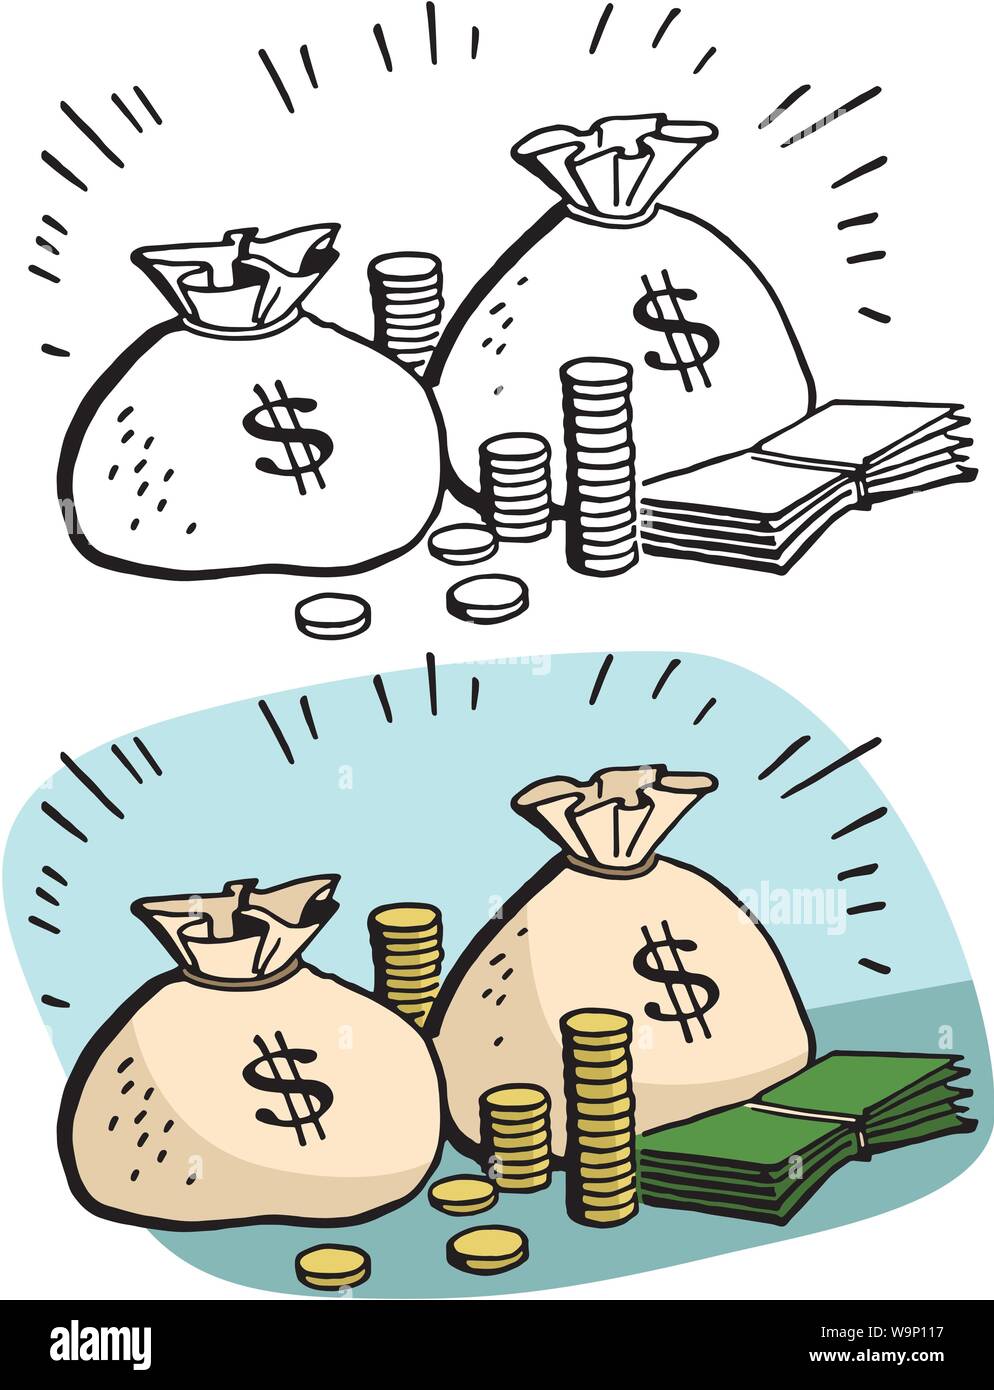 Une caricature de sacs d'argent et de piles d'argent Image Vectorielle  Stock - Alamy